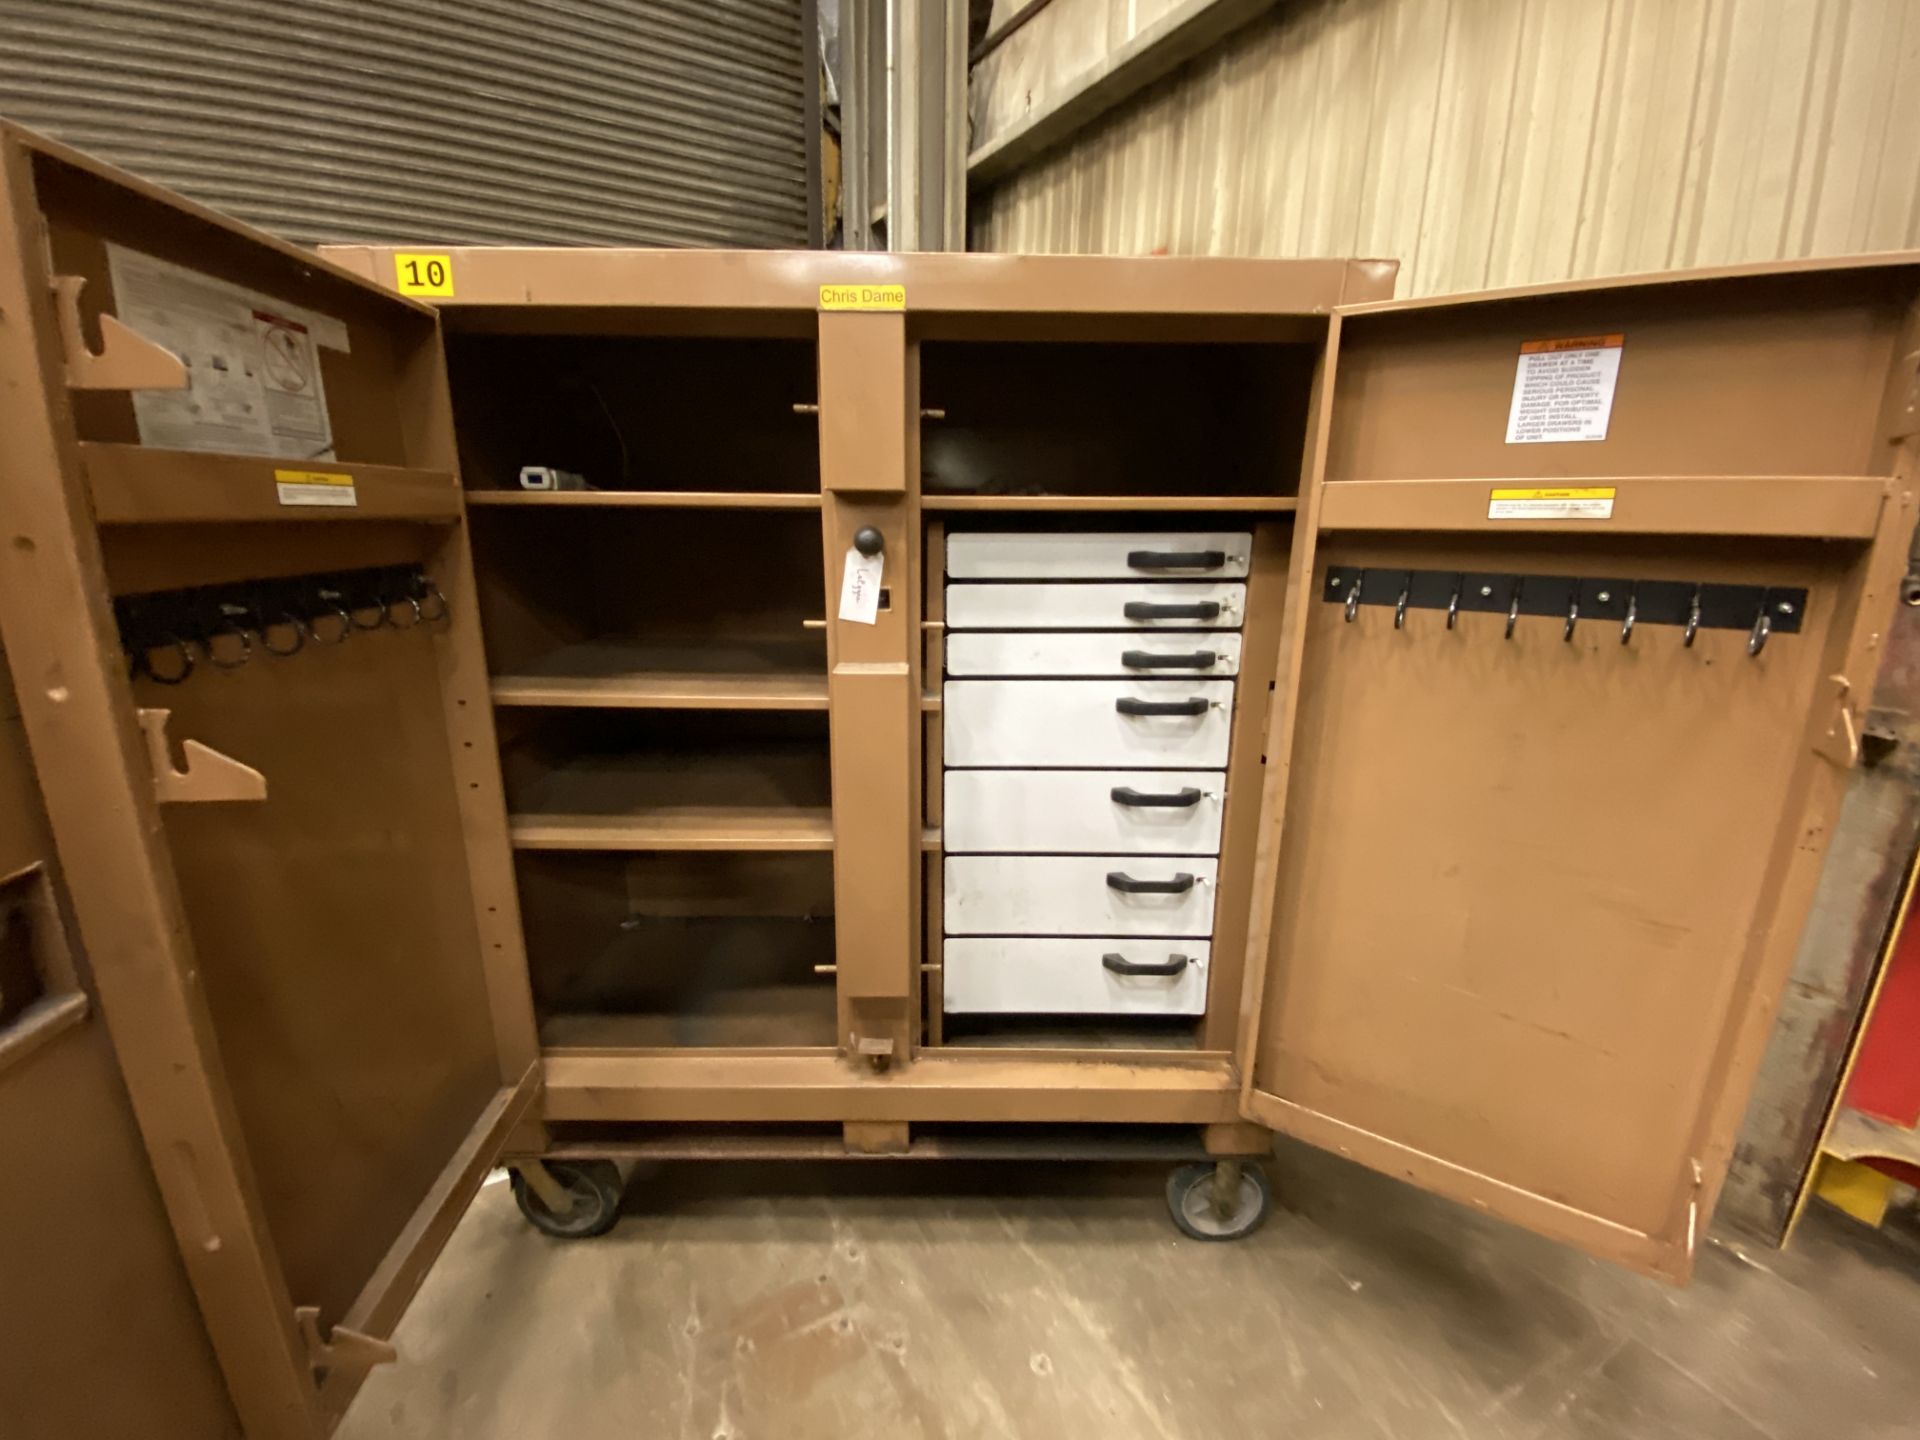 Knaack Jobmaster mn 112 rolling job site tool cabinet, 2 door, 52" x 27", 52" inside measurements, - Image 2 of 2